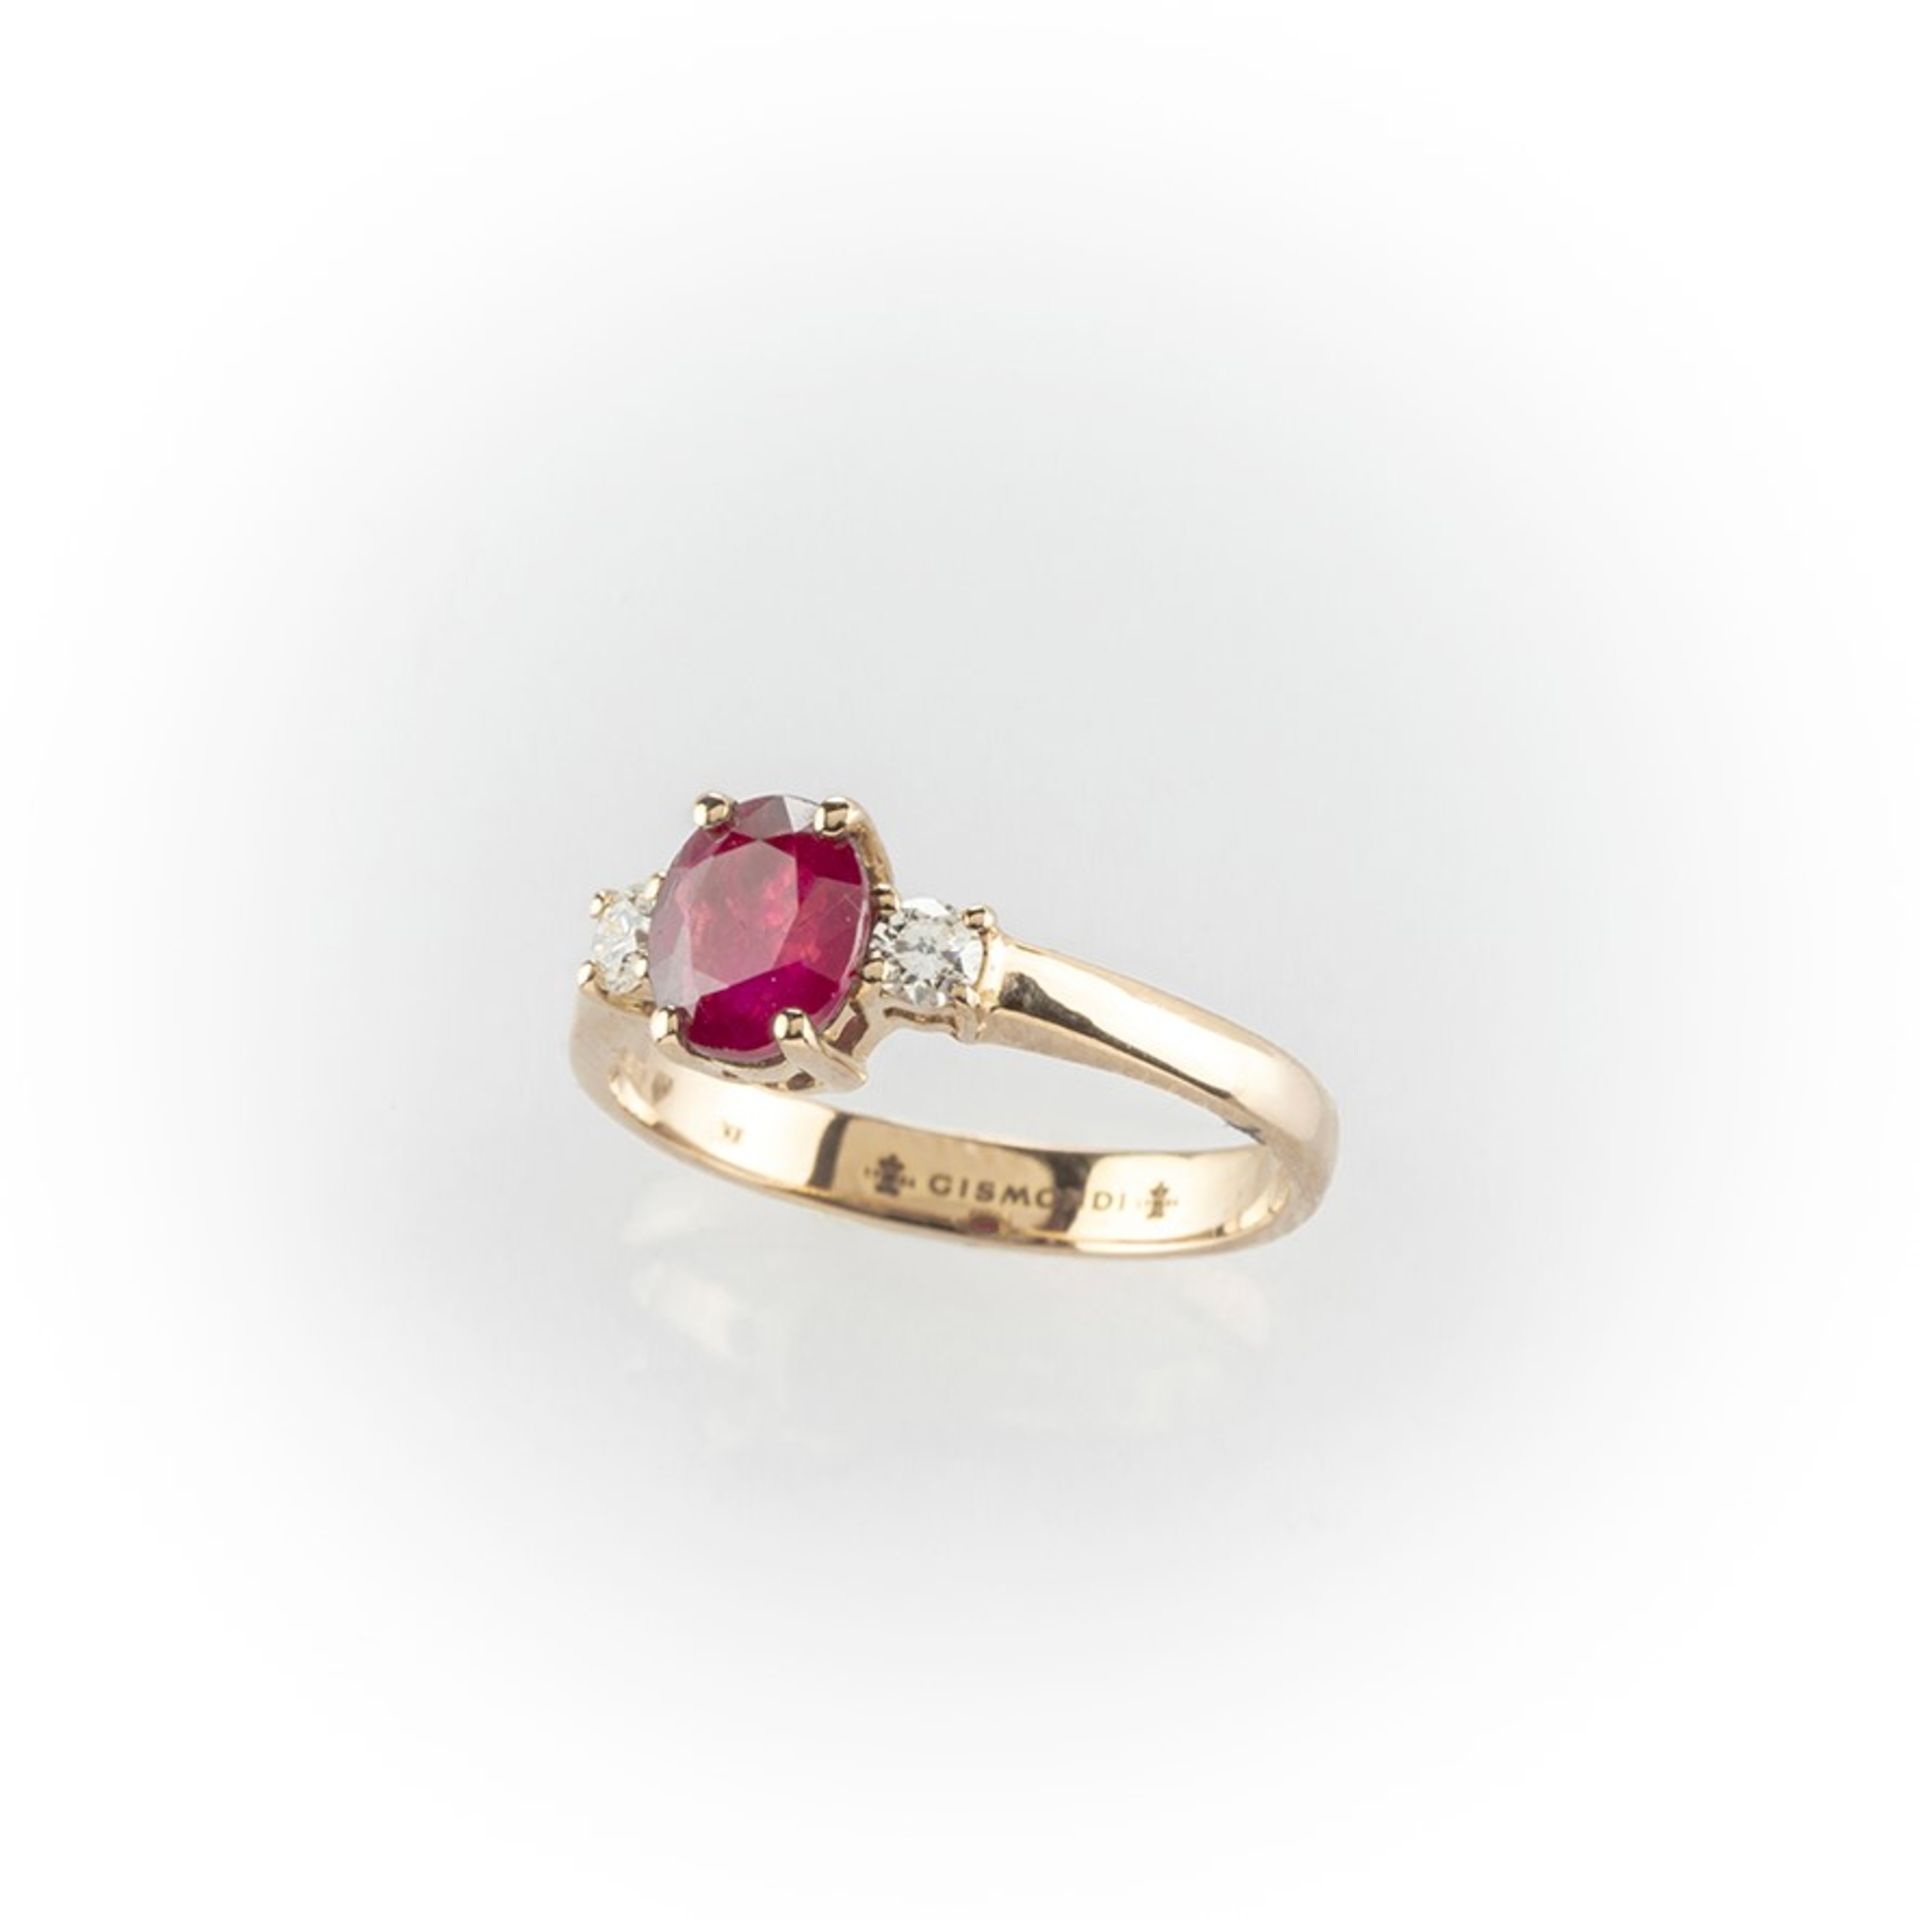 Anello Gismondi in oro rosa con rubino centrale taglio ovale contornato da due diamanti taglio brill - Image 8 of 8